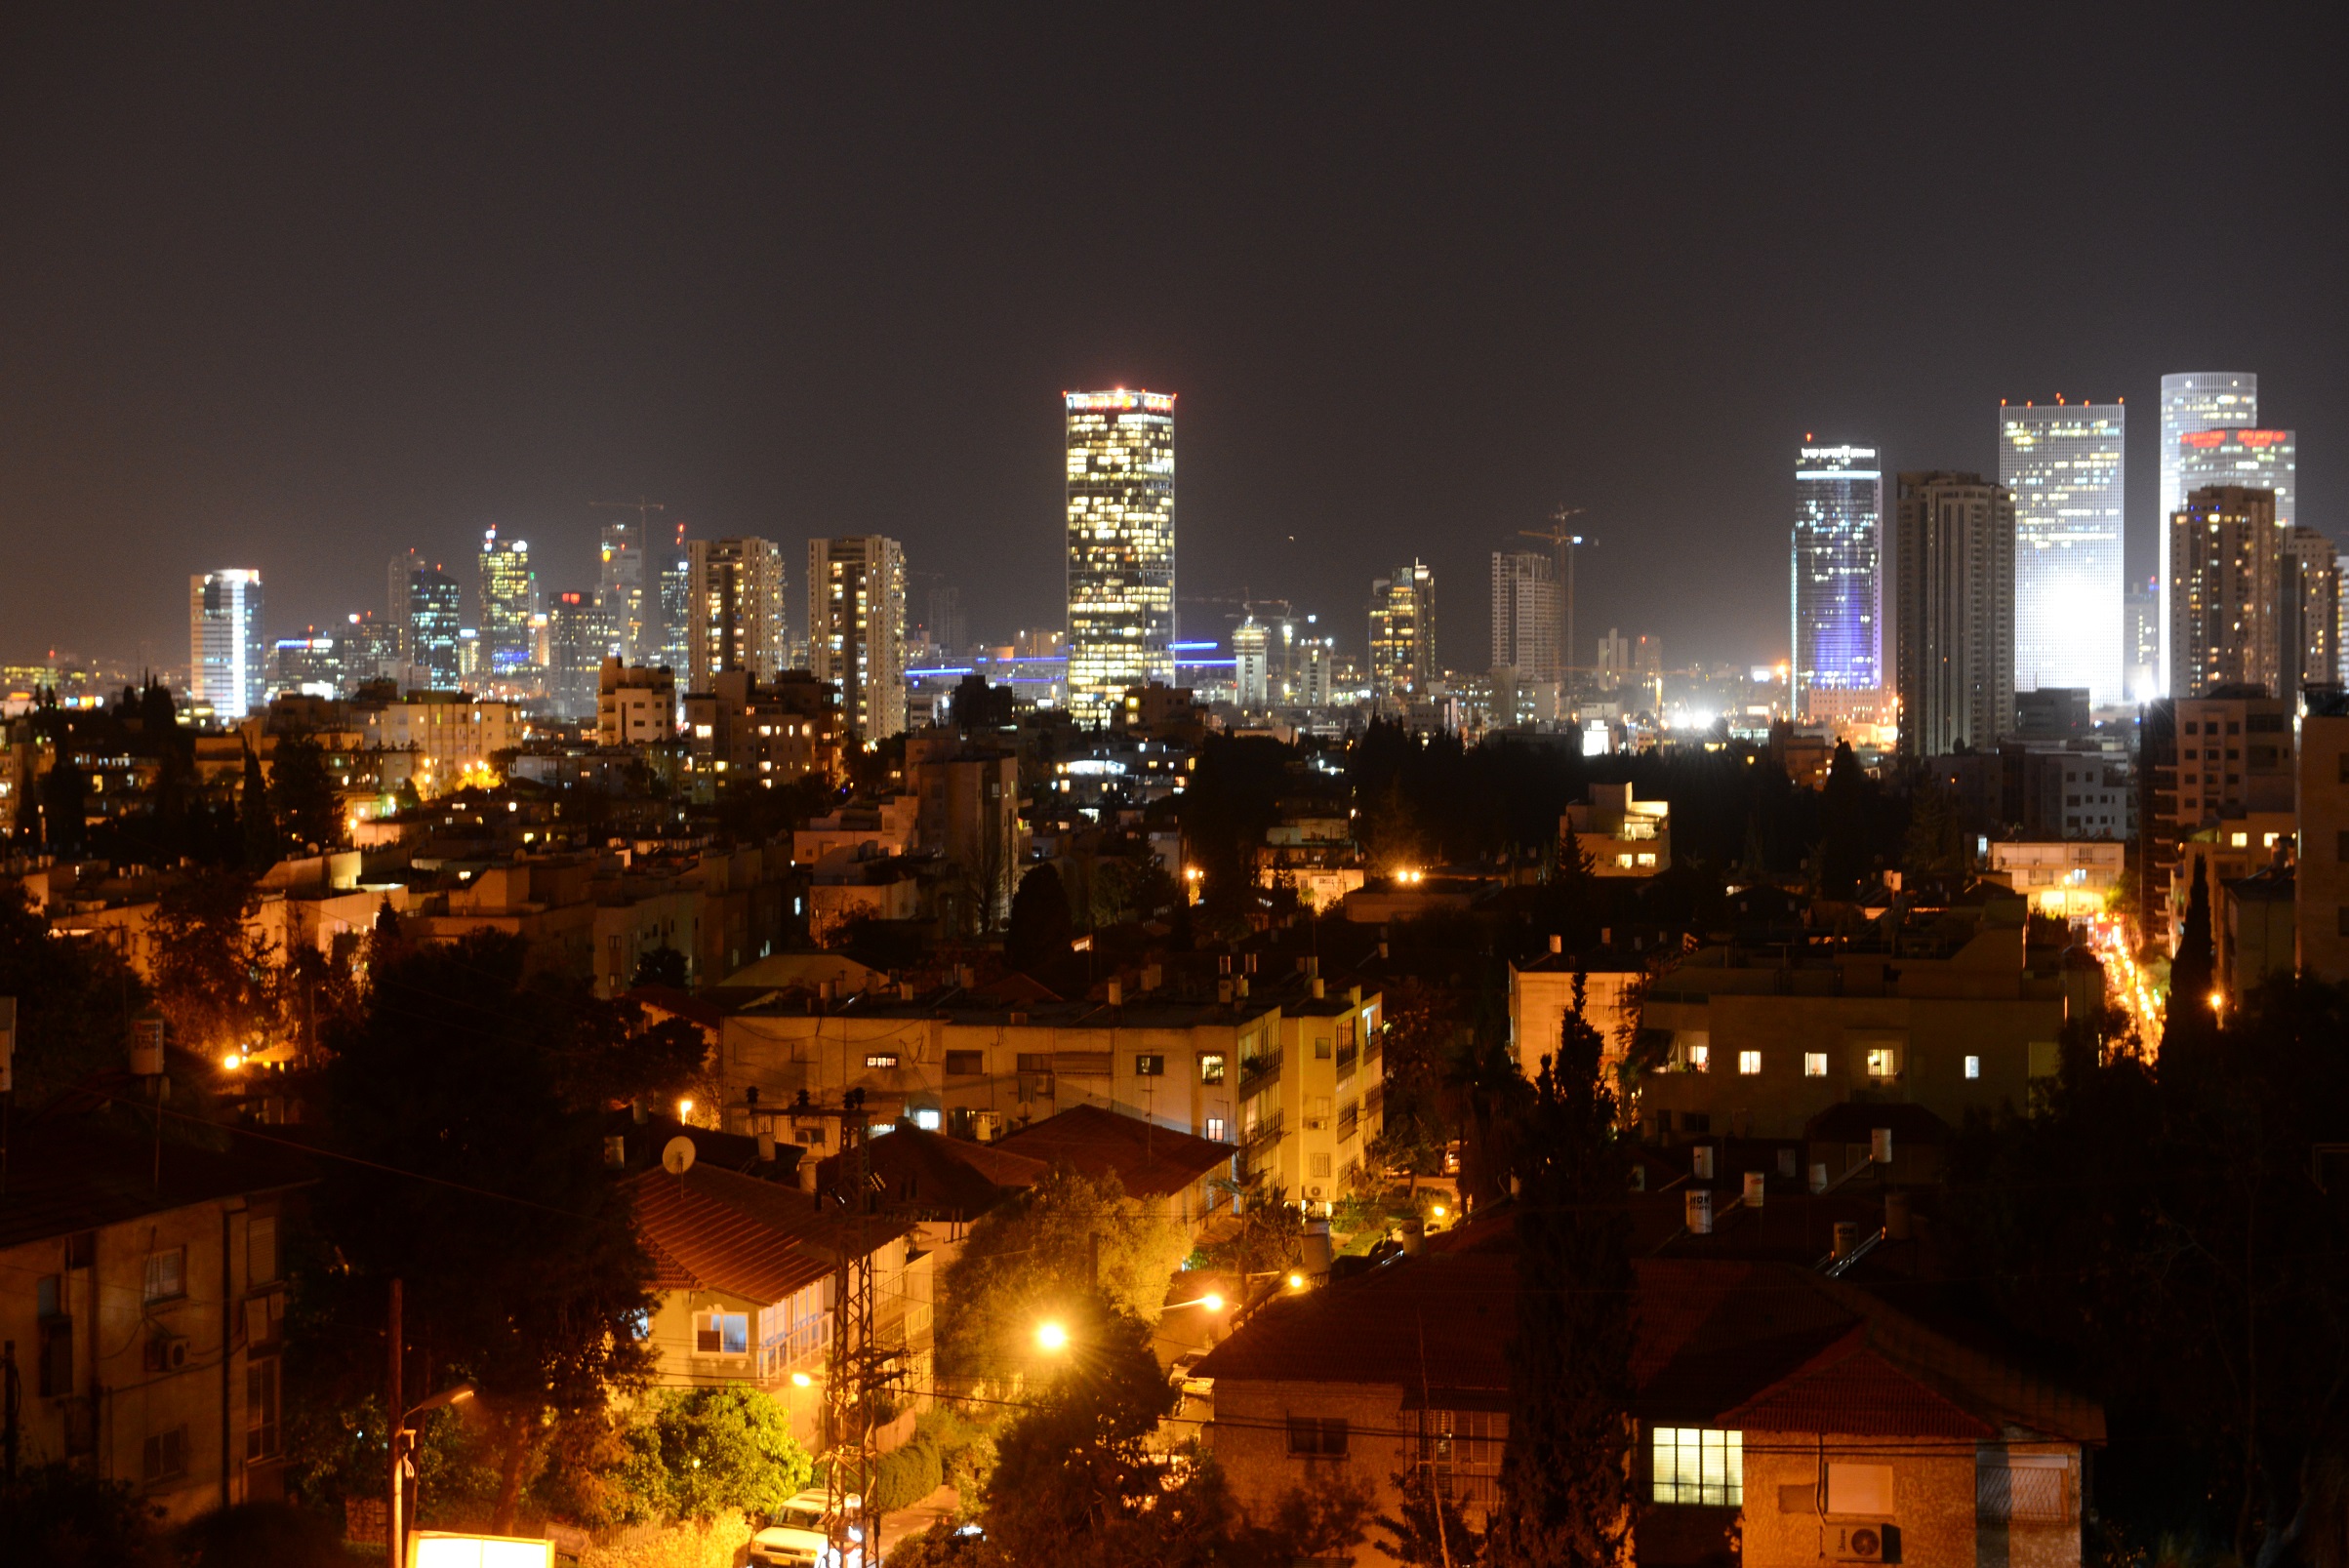 הוועדה המחוזית תל אביב אישרה להפקדה את תכנית המתאר לגבעתיים